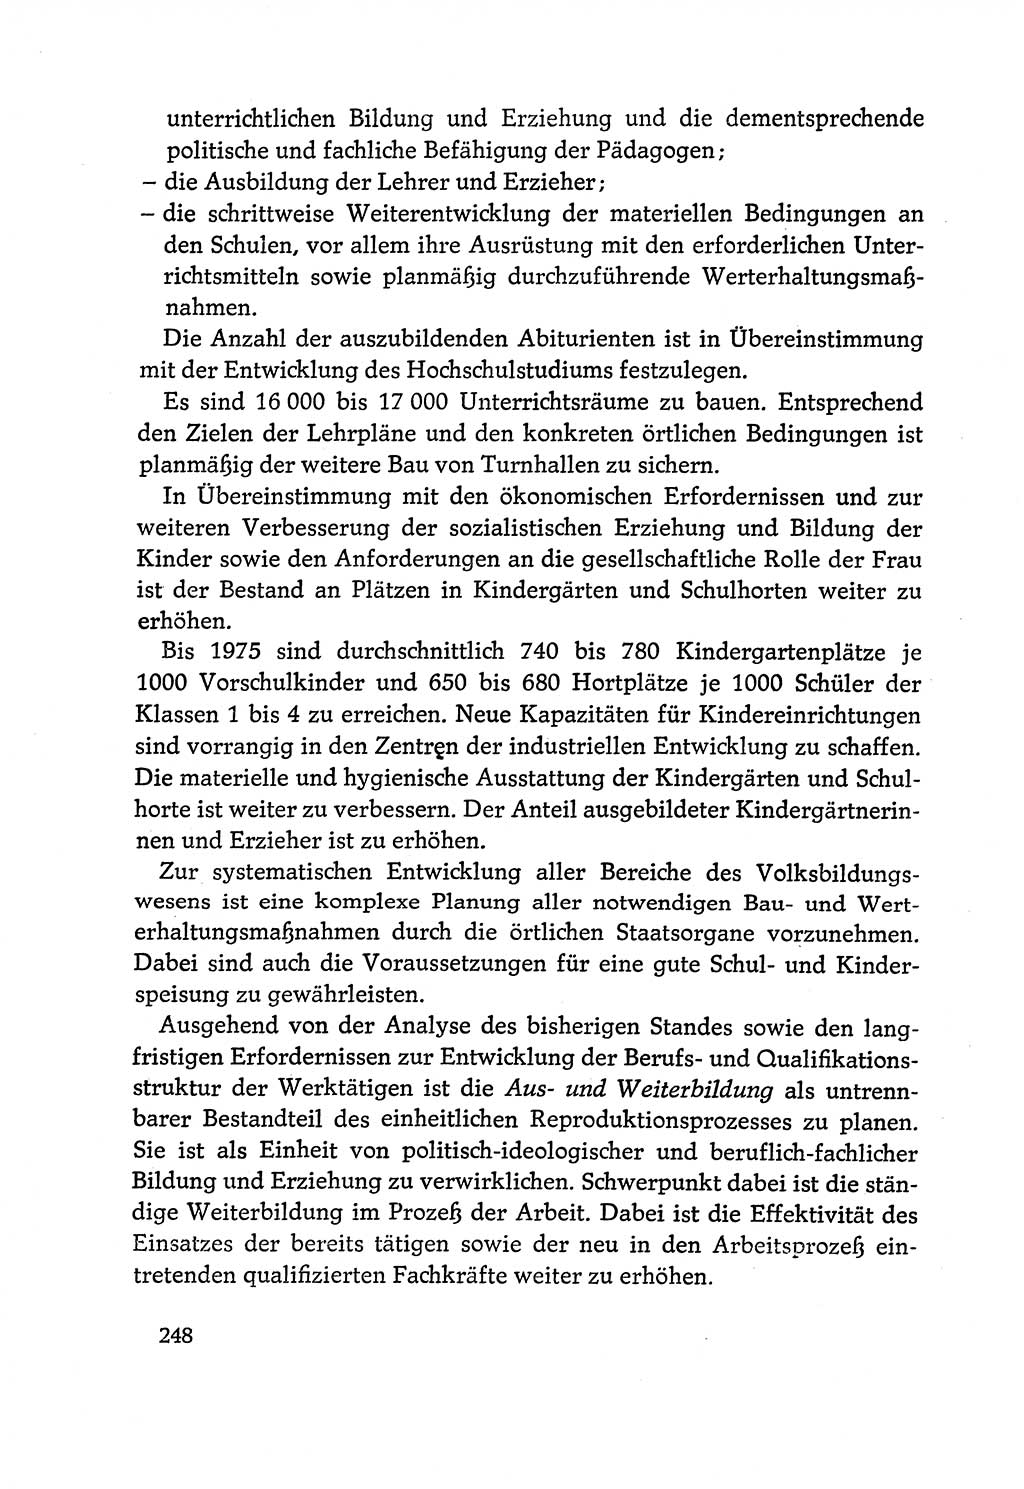 Dokumente der Sozialistischen Einheitspartei Deutschlands (SED) [Deutsche Demokratische Republik (DDR)] 1970-1971, Seite 248 (Dok. SED DDR 1970-1971, S. 248)